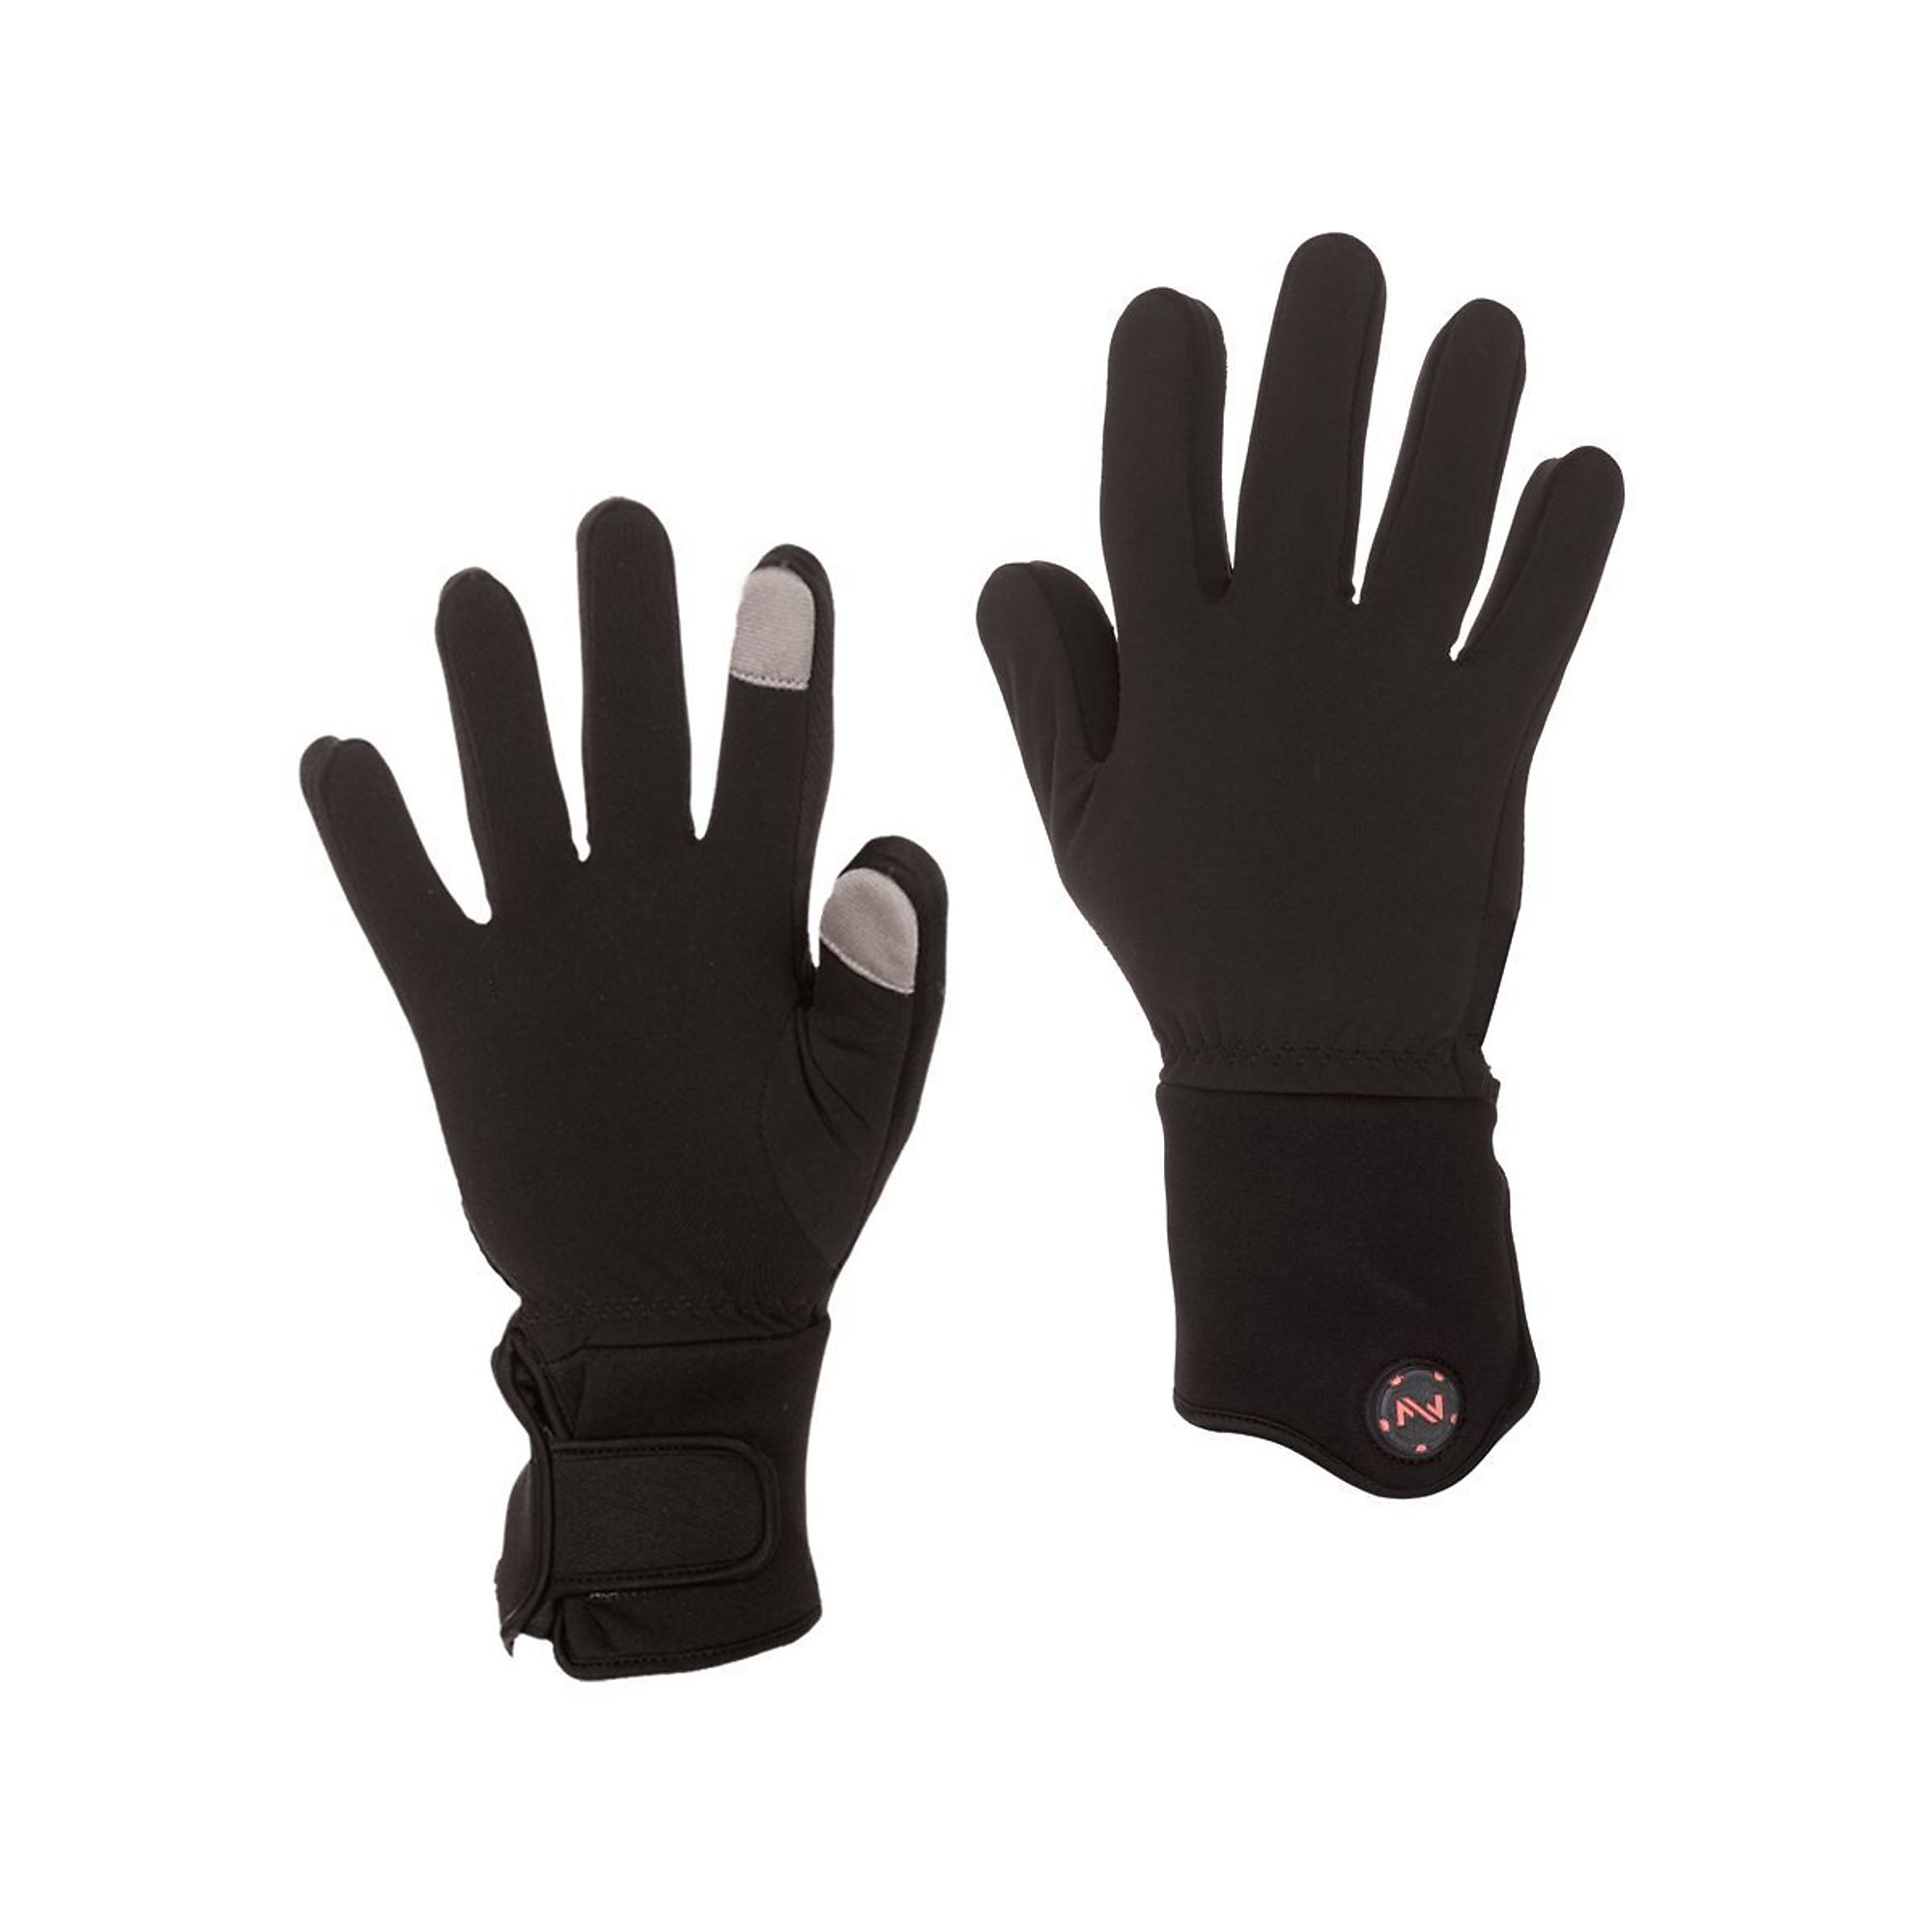 Fieldsheer, Glove Liner | Unisex | 7.4V | BLK | XL, Size XL, Color Black, Included (qty.) 2 Model MWUG06010520 -  MOBILE WARMING